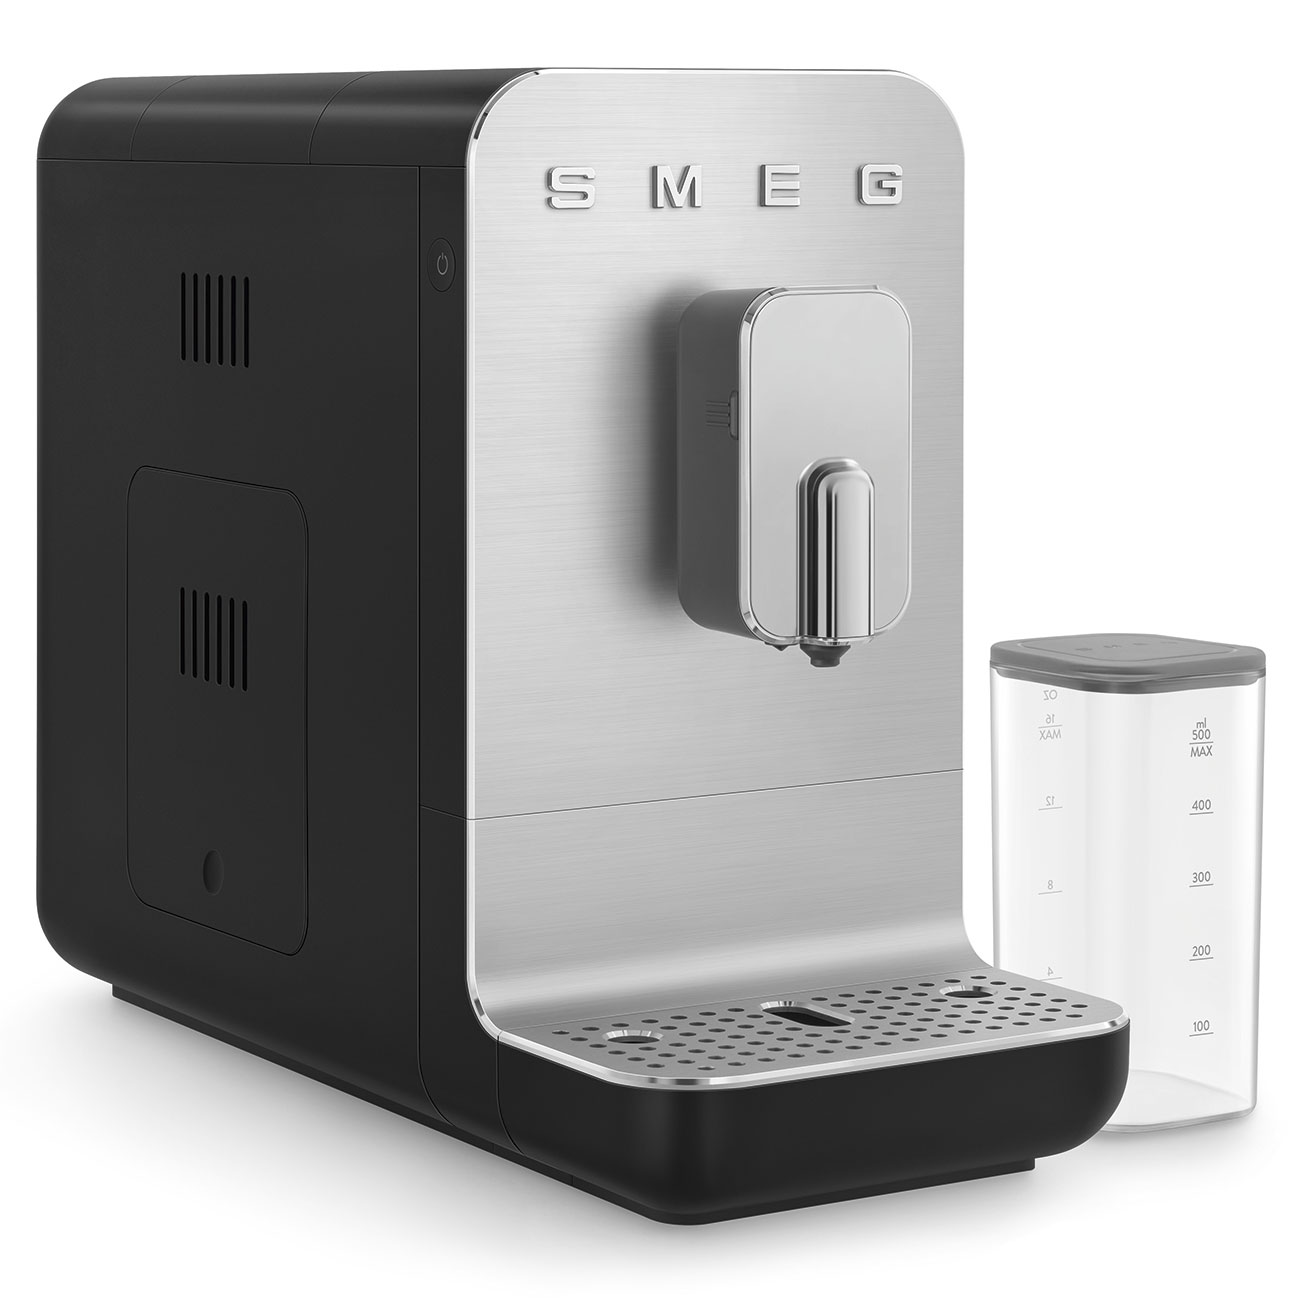 SMEG Schwarz Kaffeevollautomat mit Milchfunktion_11